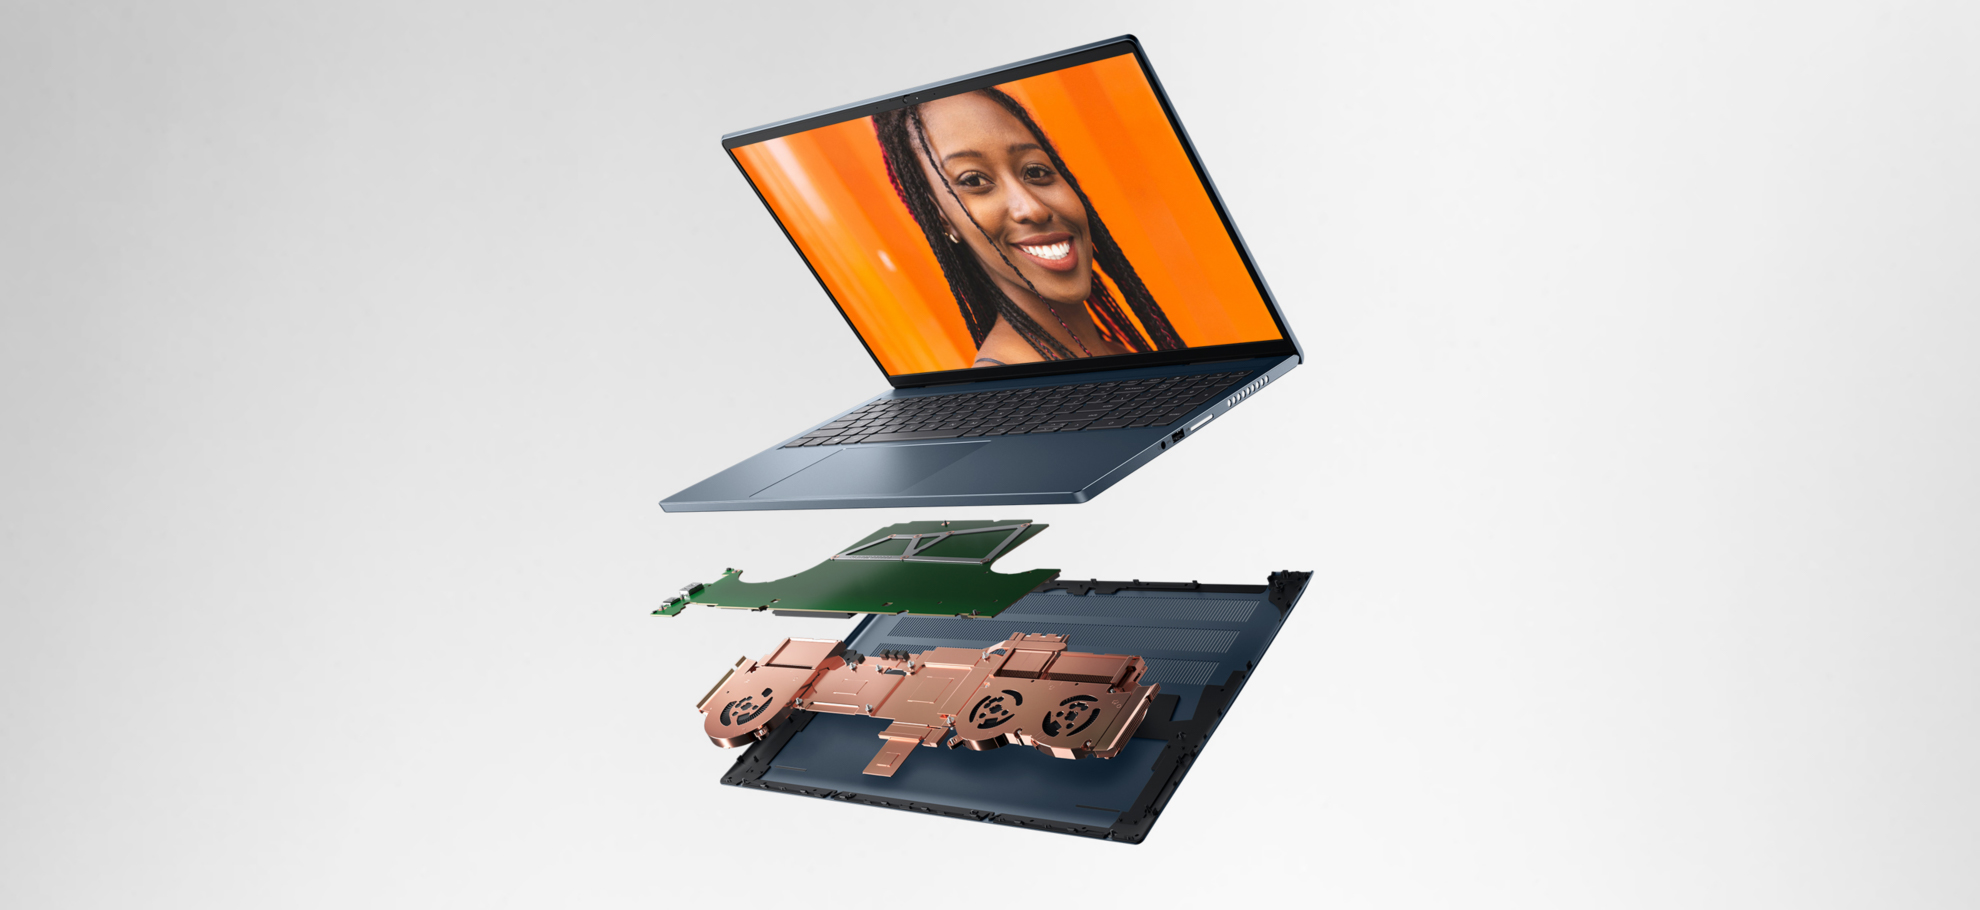 Cấu hình - Dell Inspiron 16 Plus Laptop (7610) 